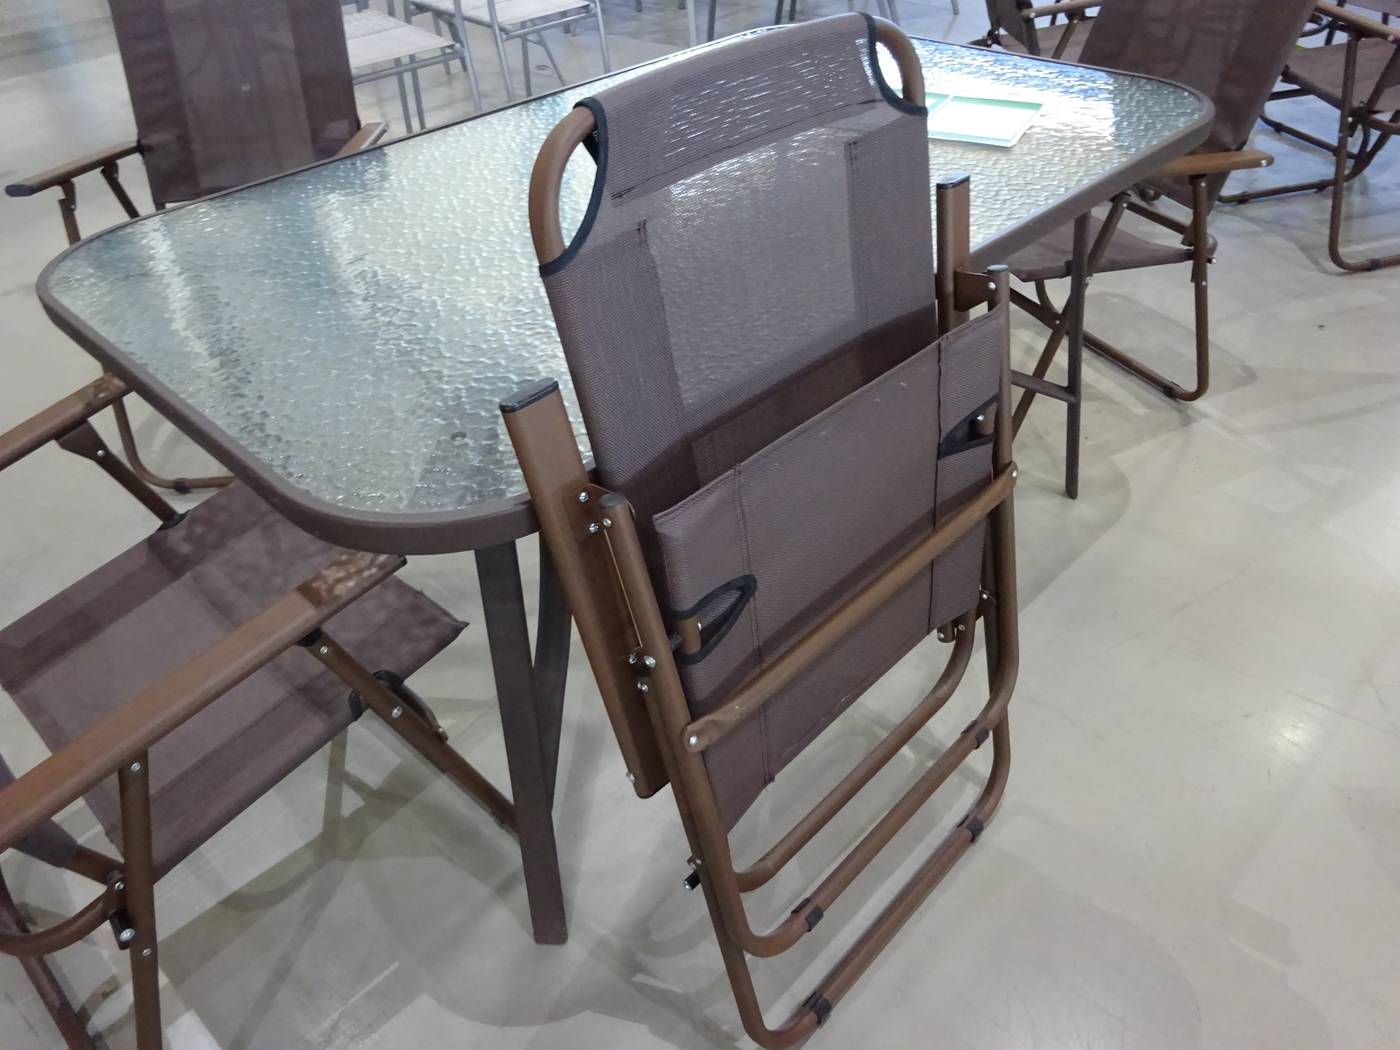 Sillón plegable aluminio Niagara color bronce - Sillón plegable de aluminio, con asiento y respaldo de Textilen color bronce